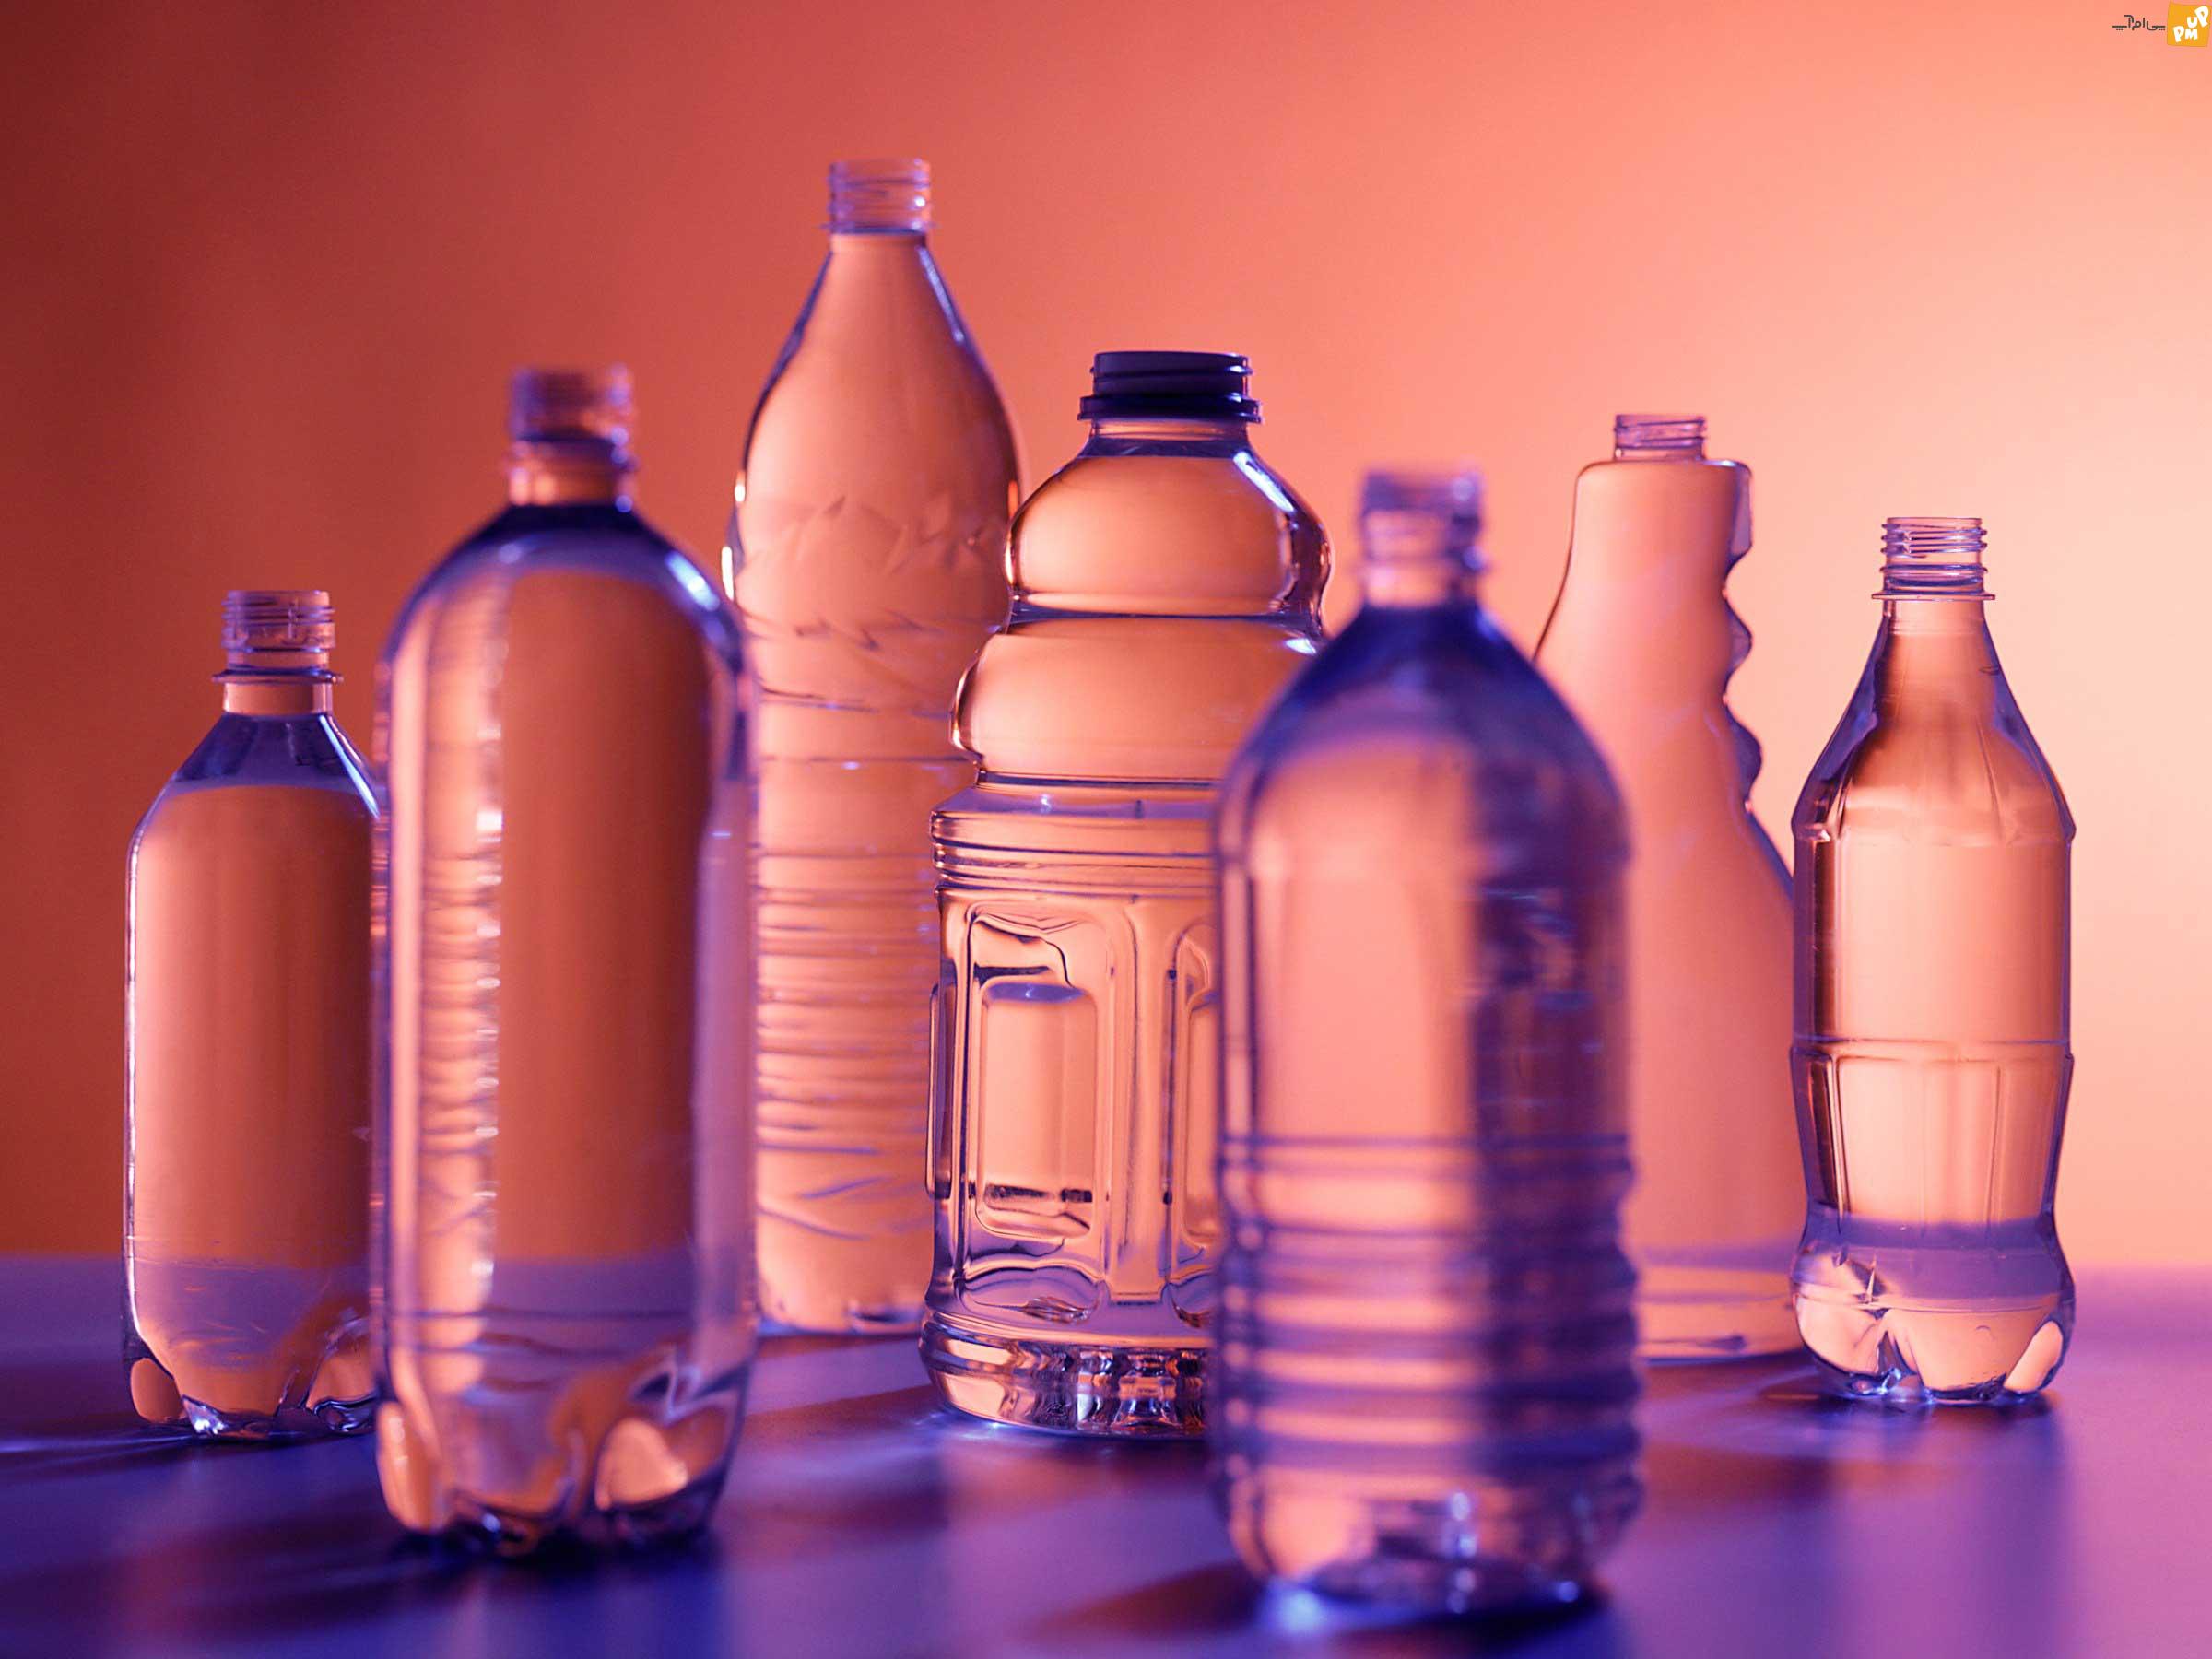 هشدار؛ استفاده از آب معدنی می تواند خطرناک و سرطان زا باشد.